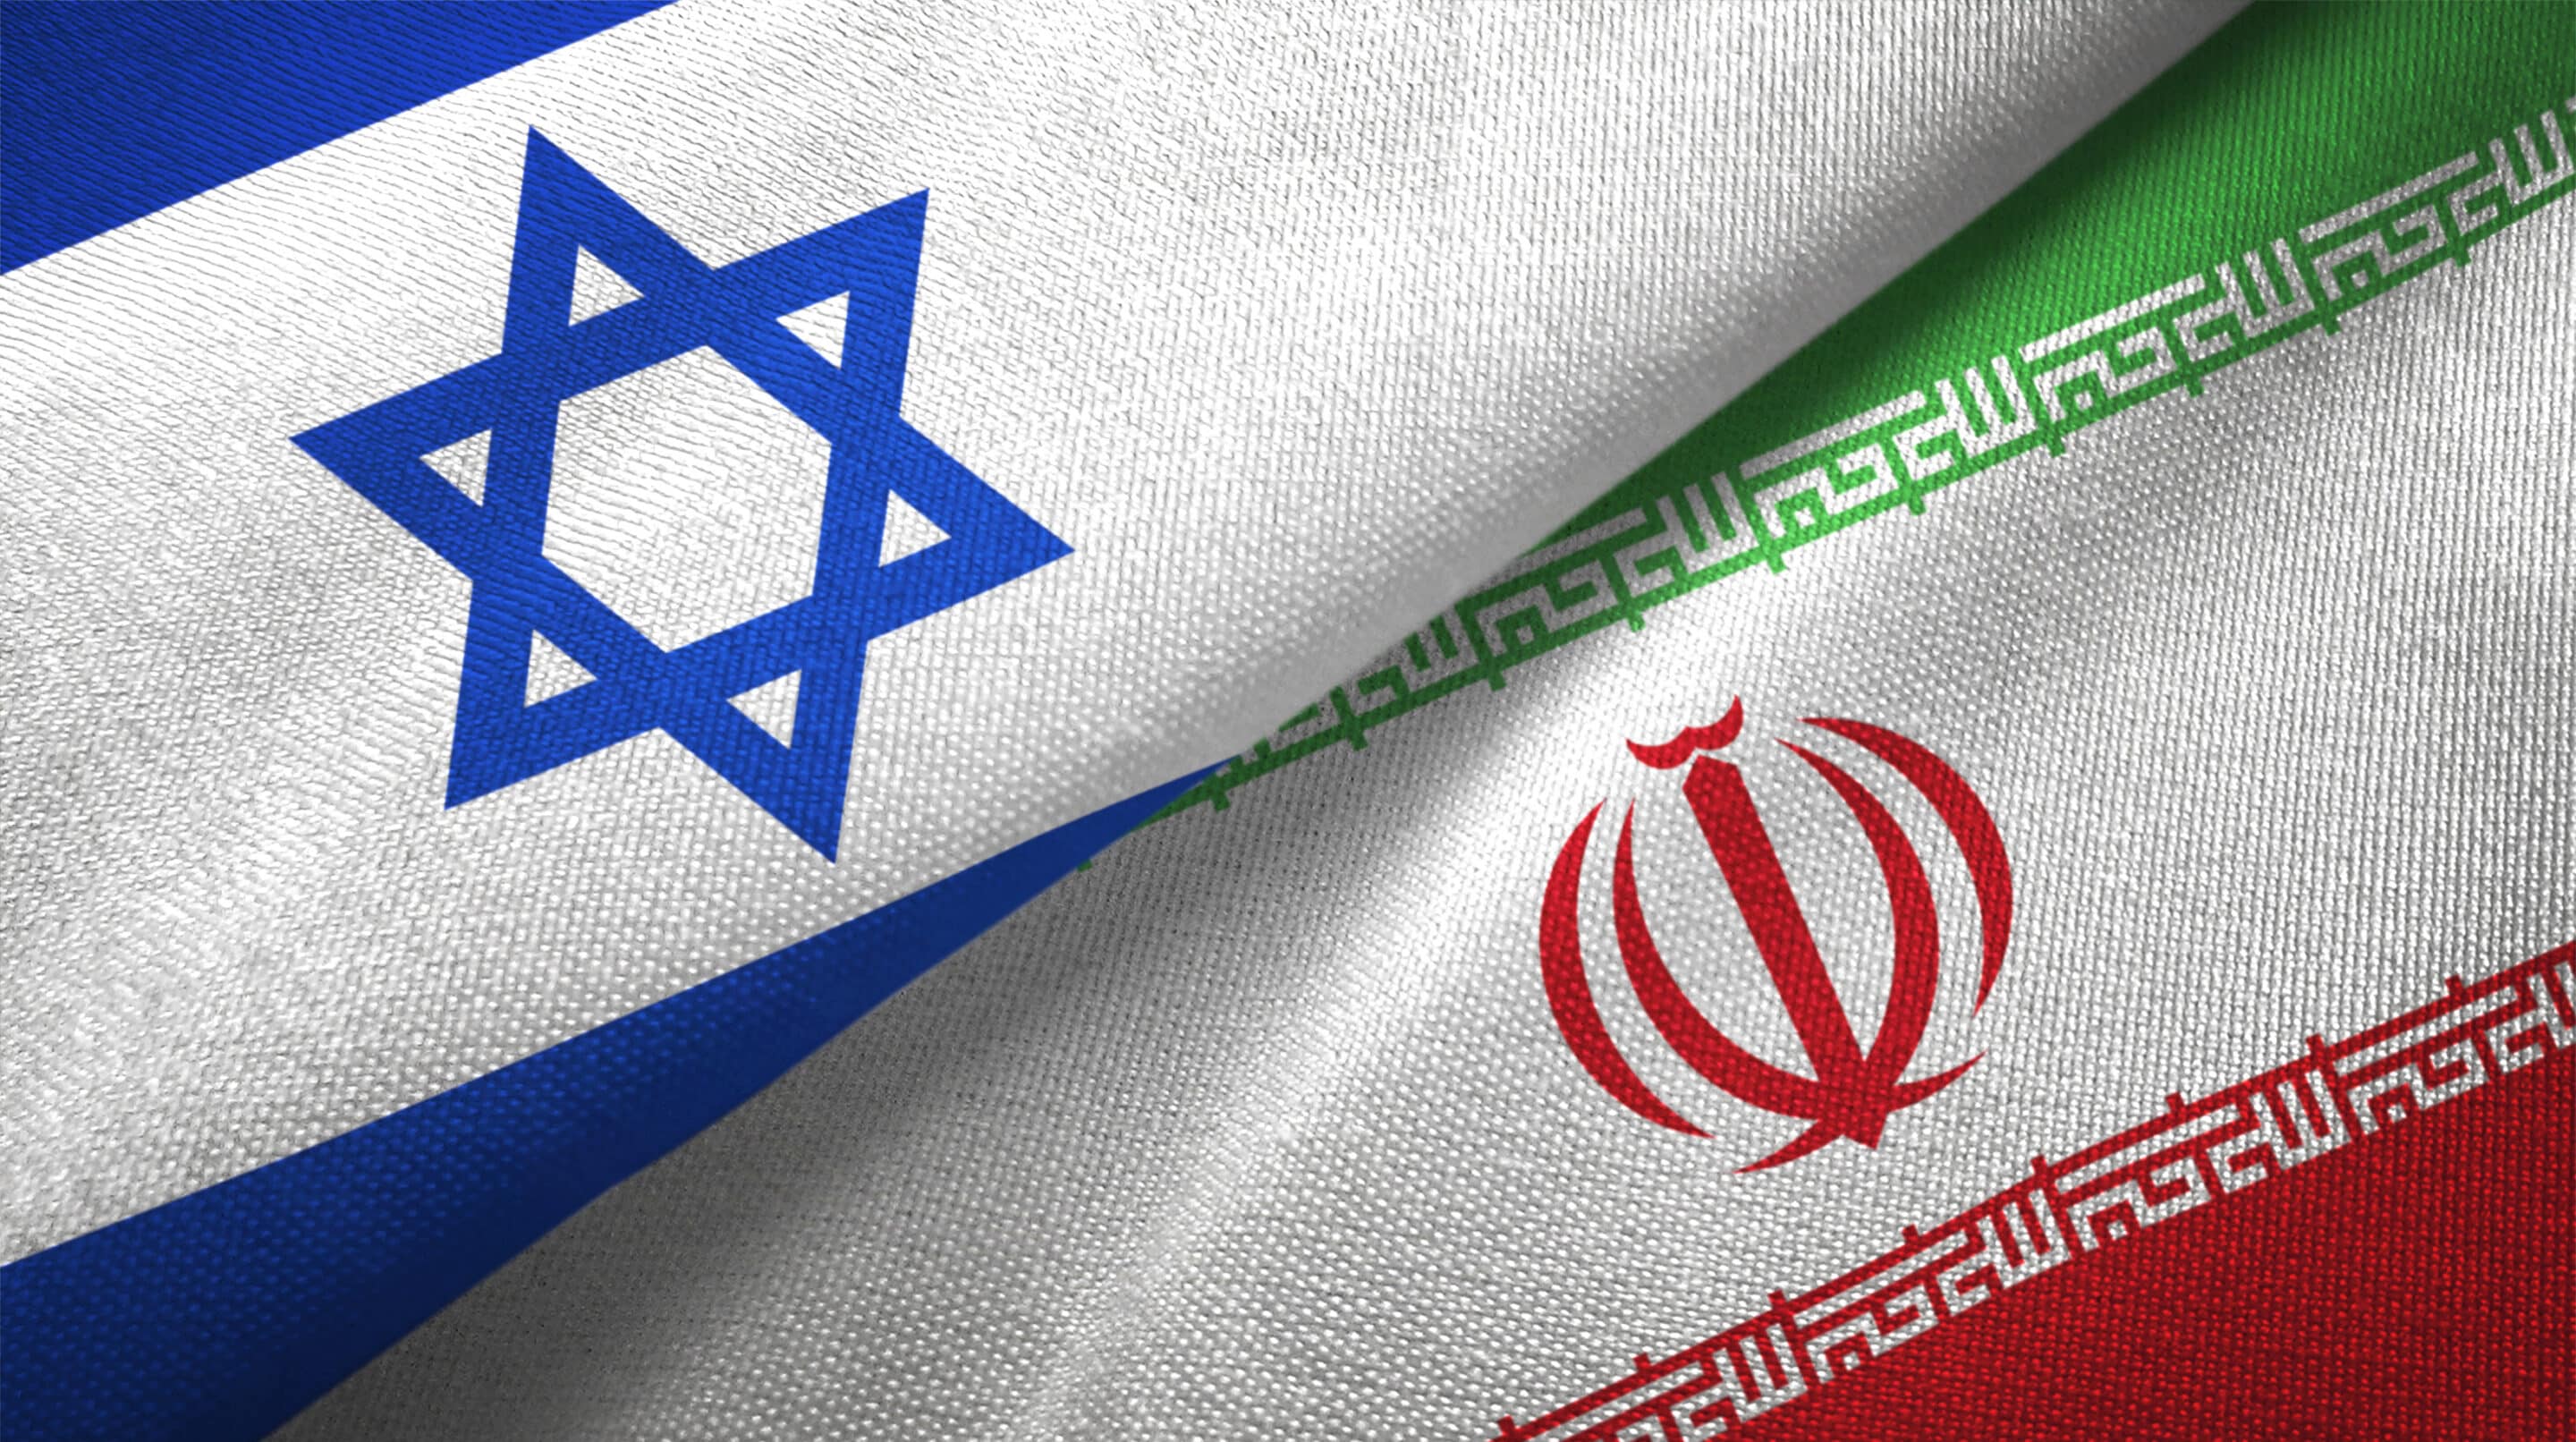 Chmelár: politici rázne odsúdili útok Iránu na Izrael. Zámerne však vynechali kontext celého sporu. 8